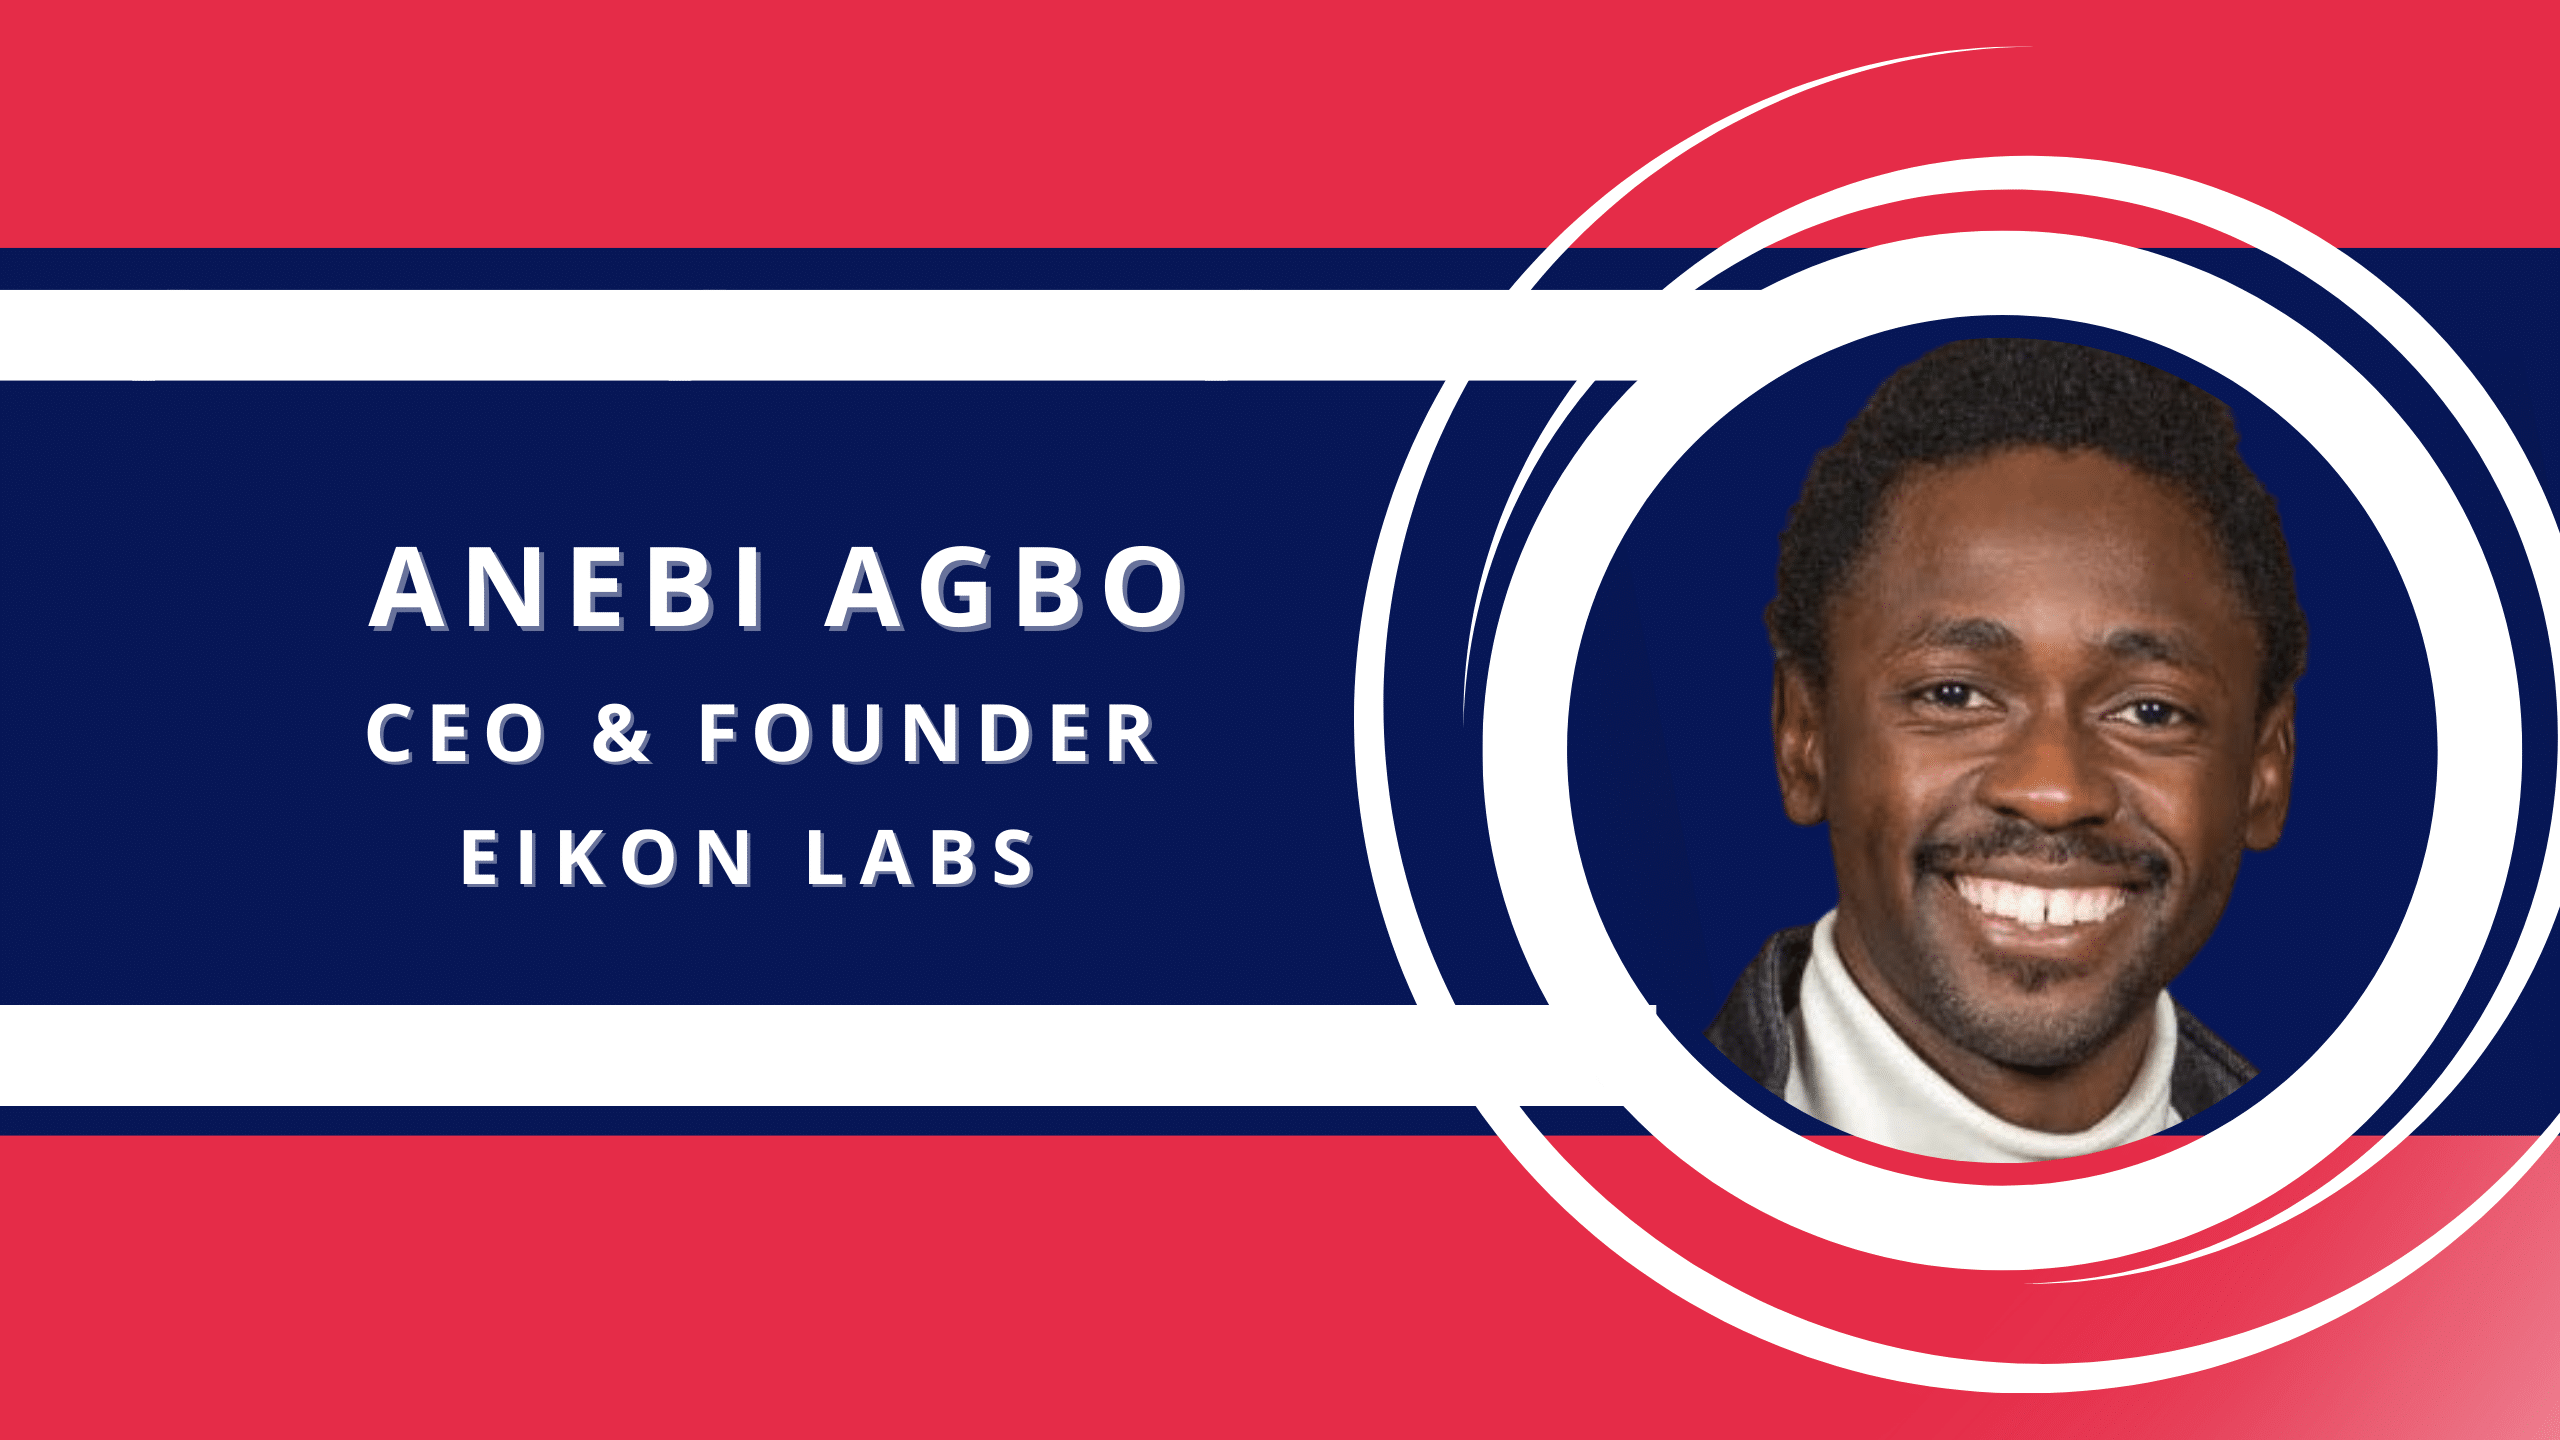 Anebi Agbo